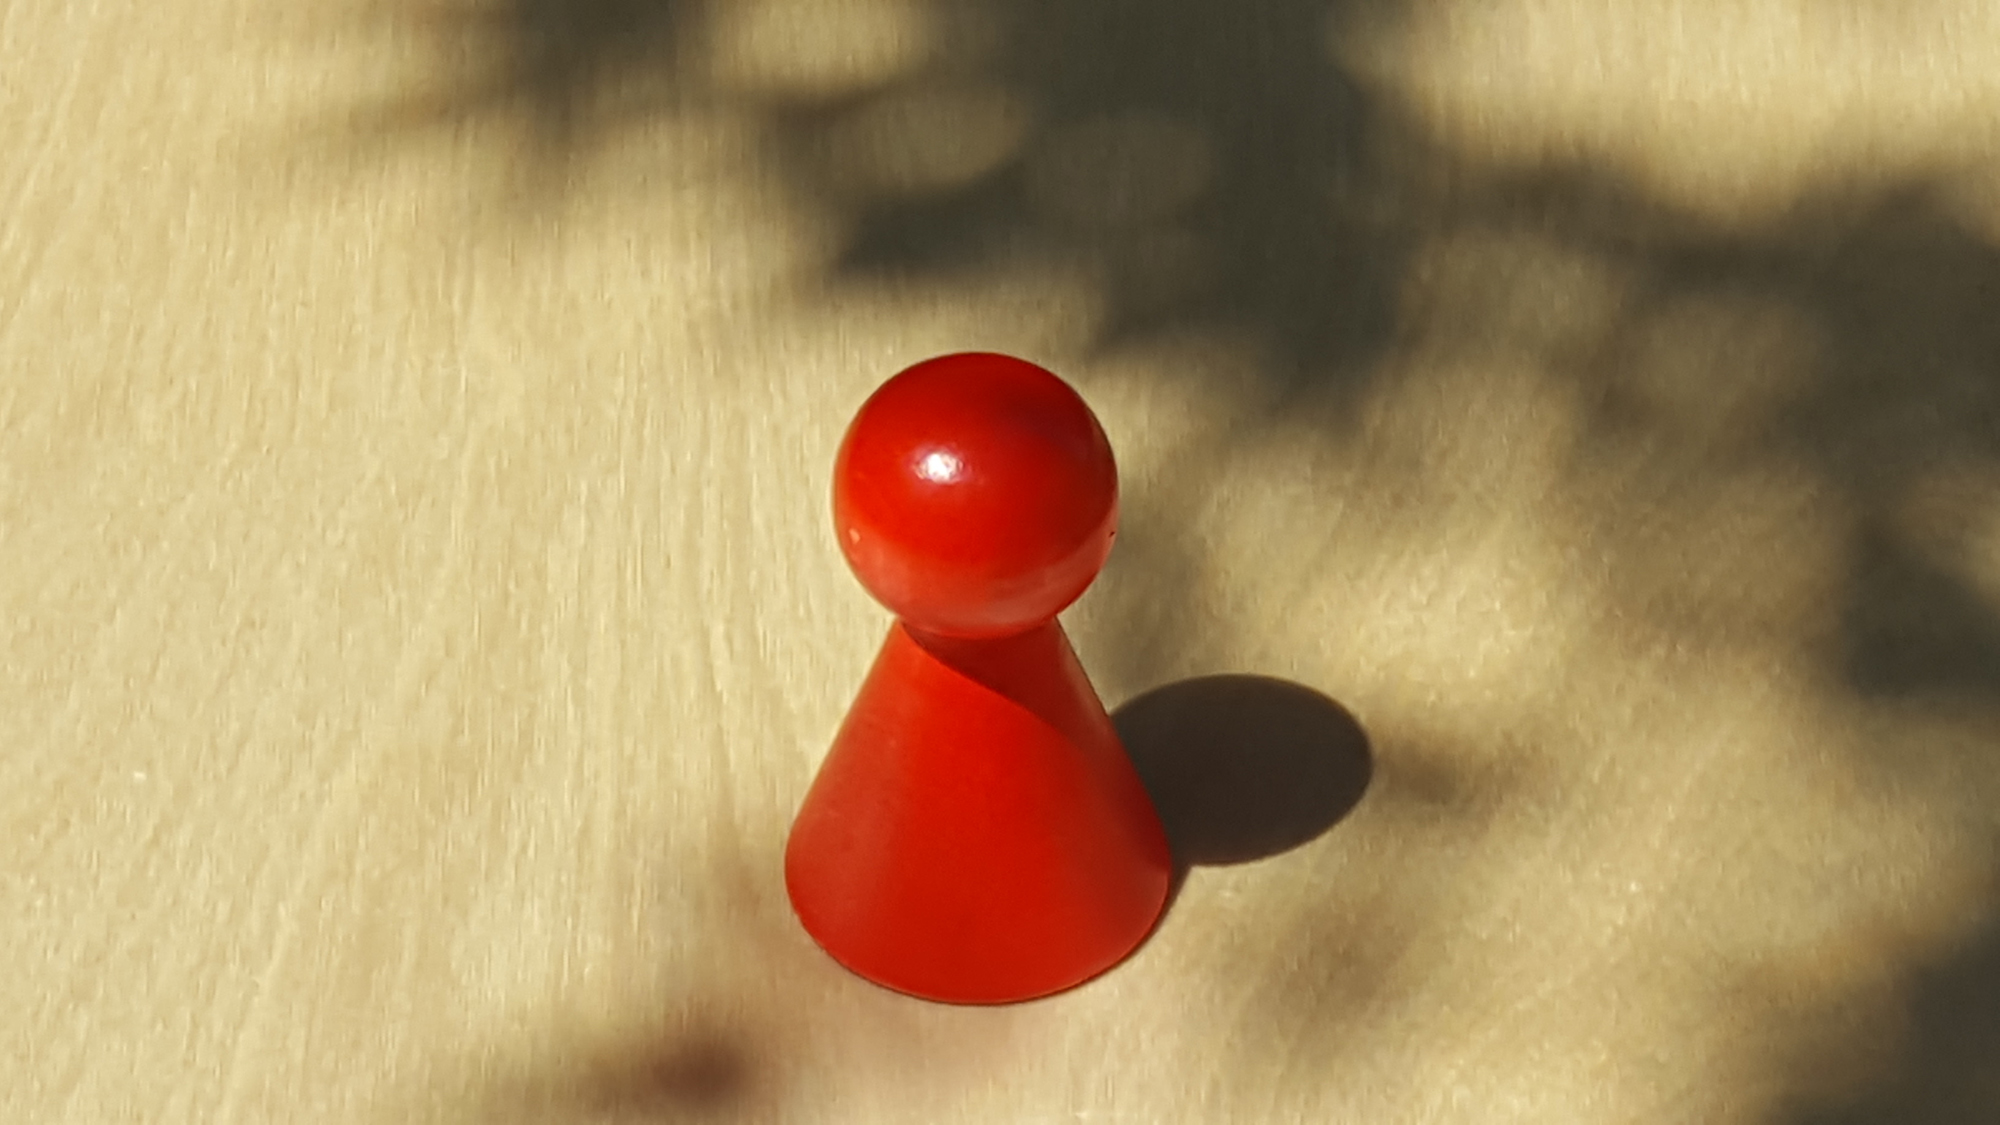 www.systembrett.at · Systembrett-Artikel · Einzel-Figur 7 cm in rot (ohne Augen);